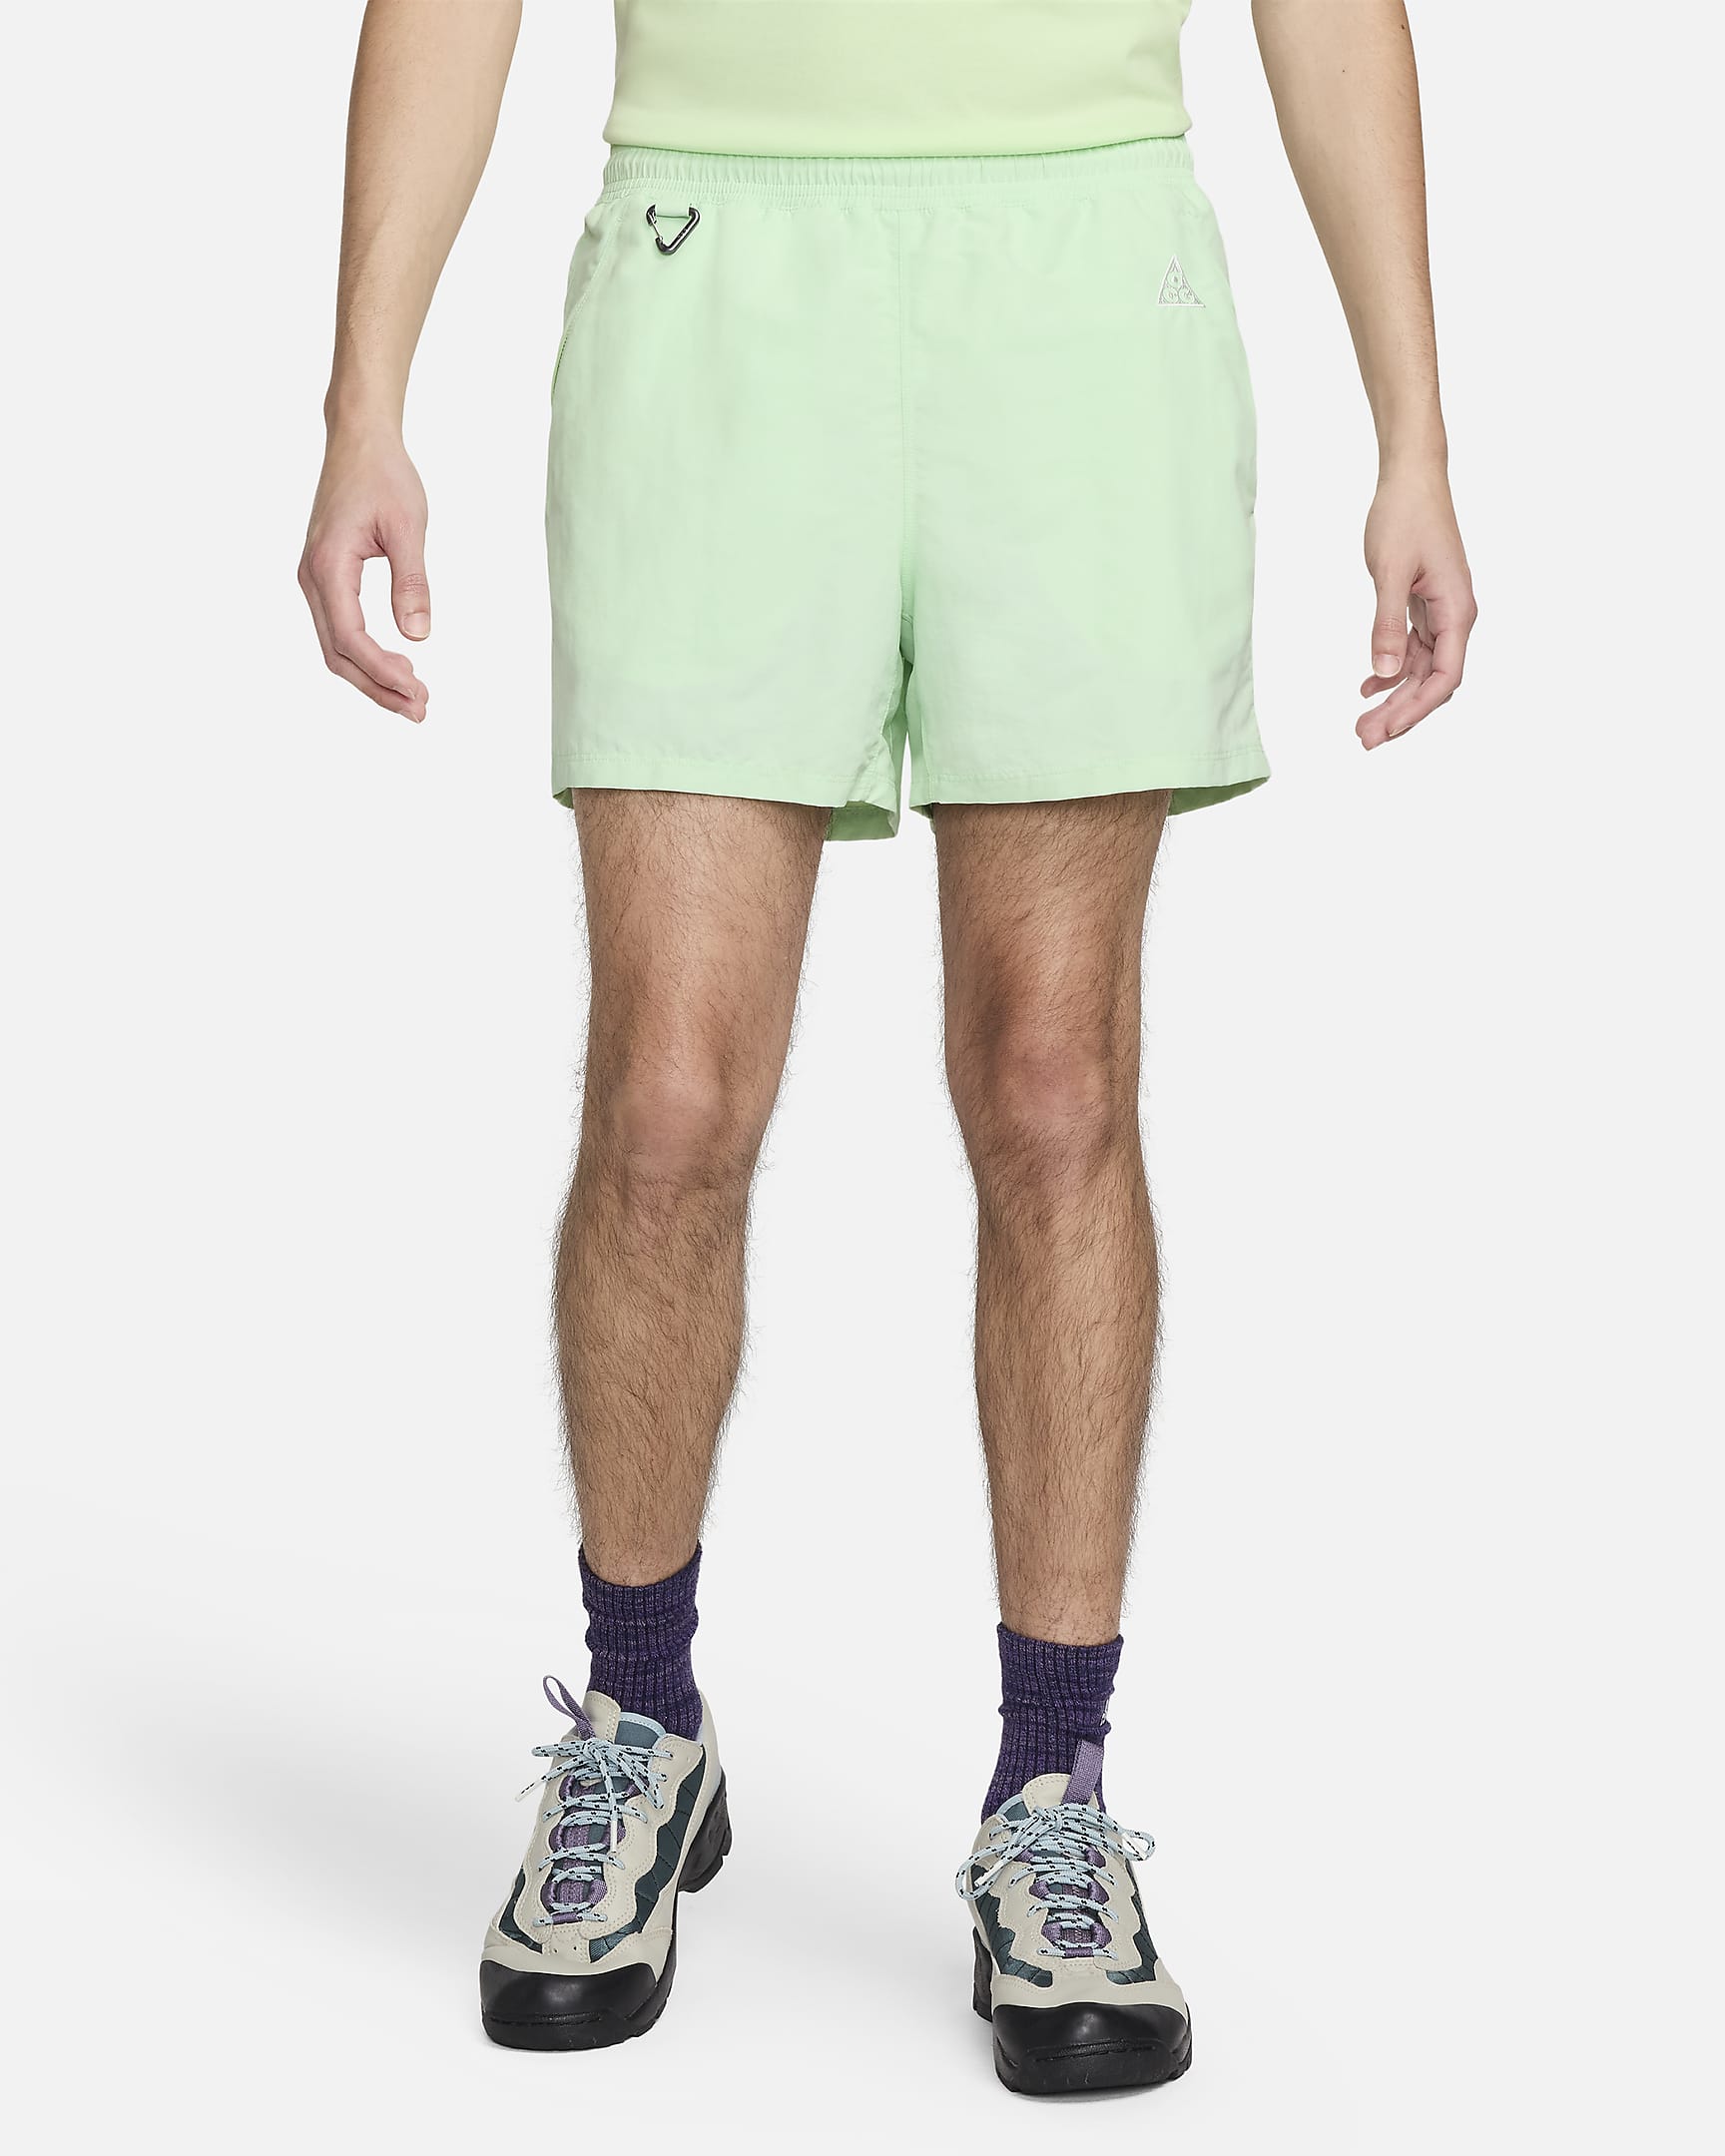 Nike ACG 'Reservoir Goat' Men's Shorts - Vapour Green/Summit White